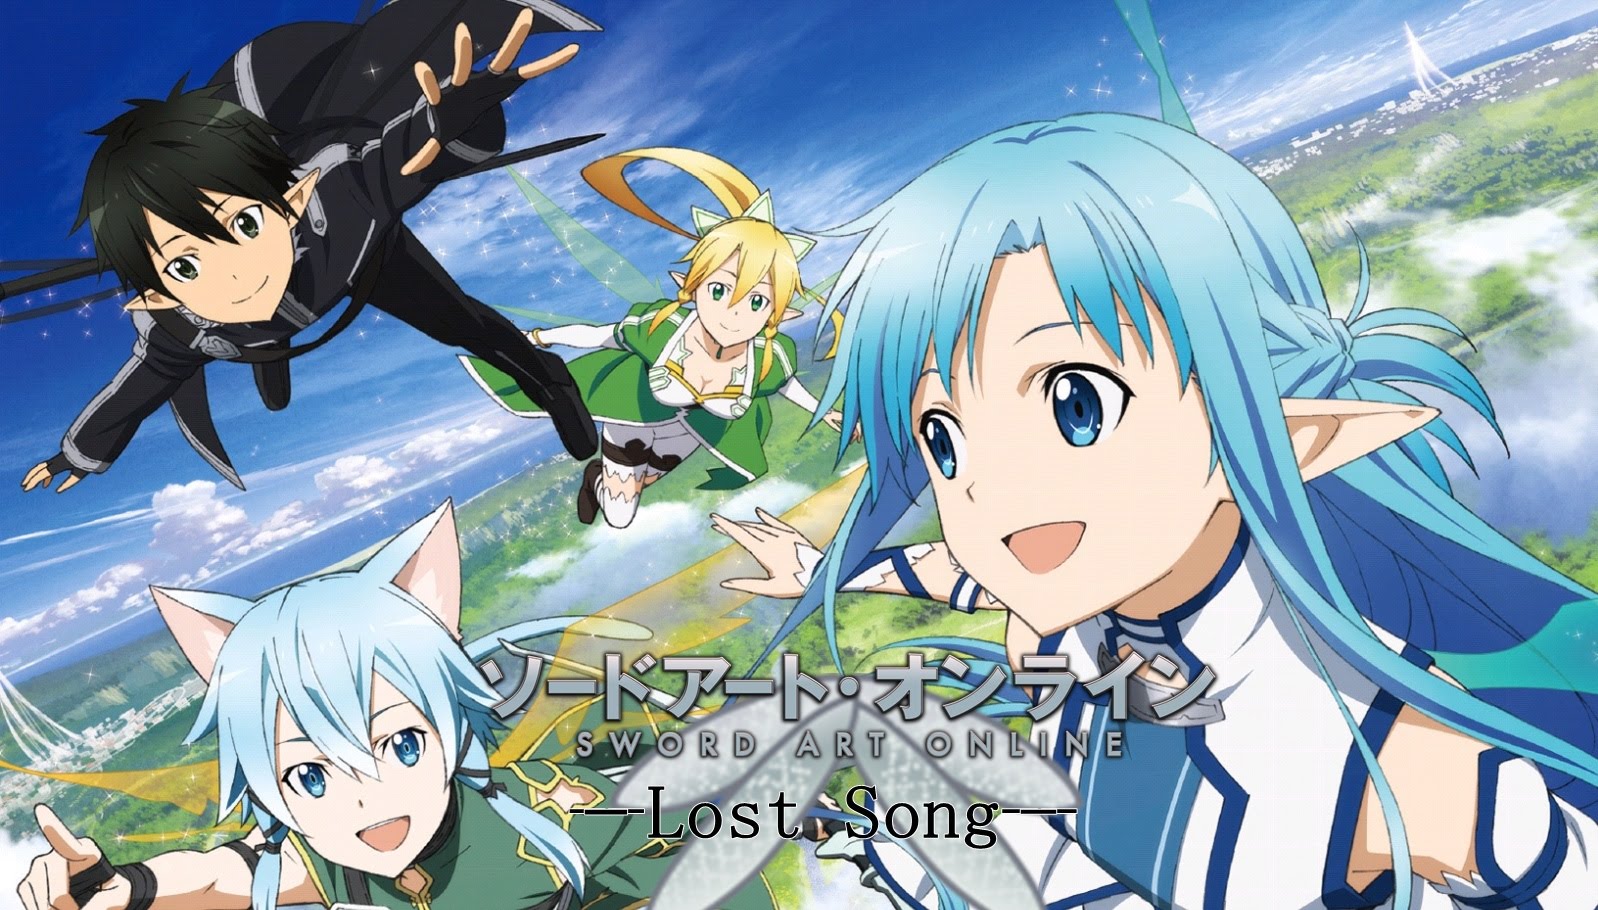 7. Sword Art Online: Lost Song - wide 4